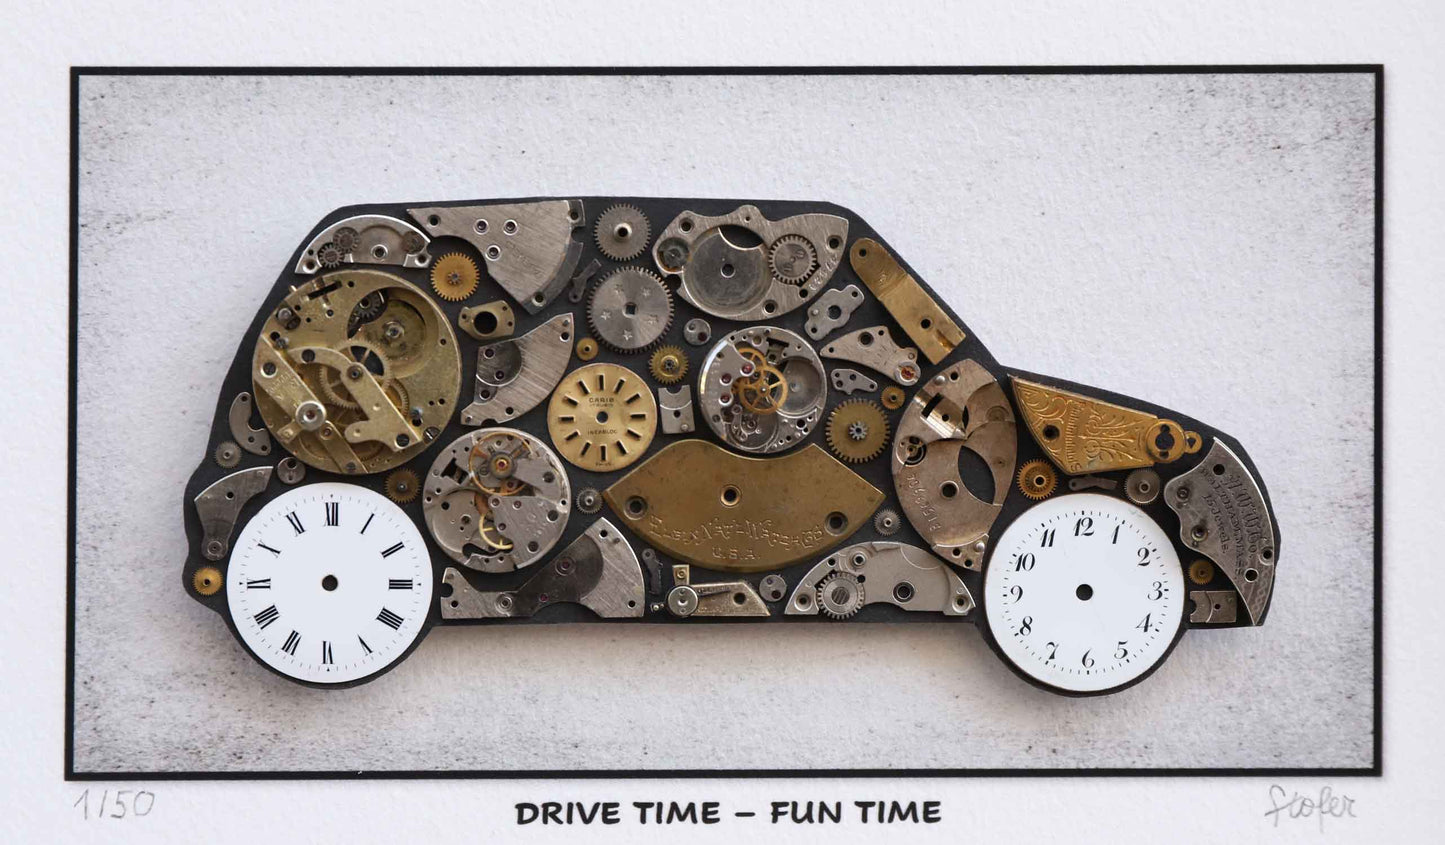 Drive time - fun time